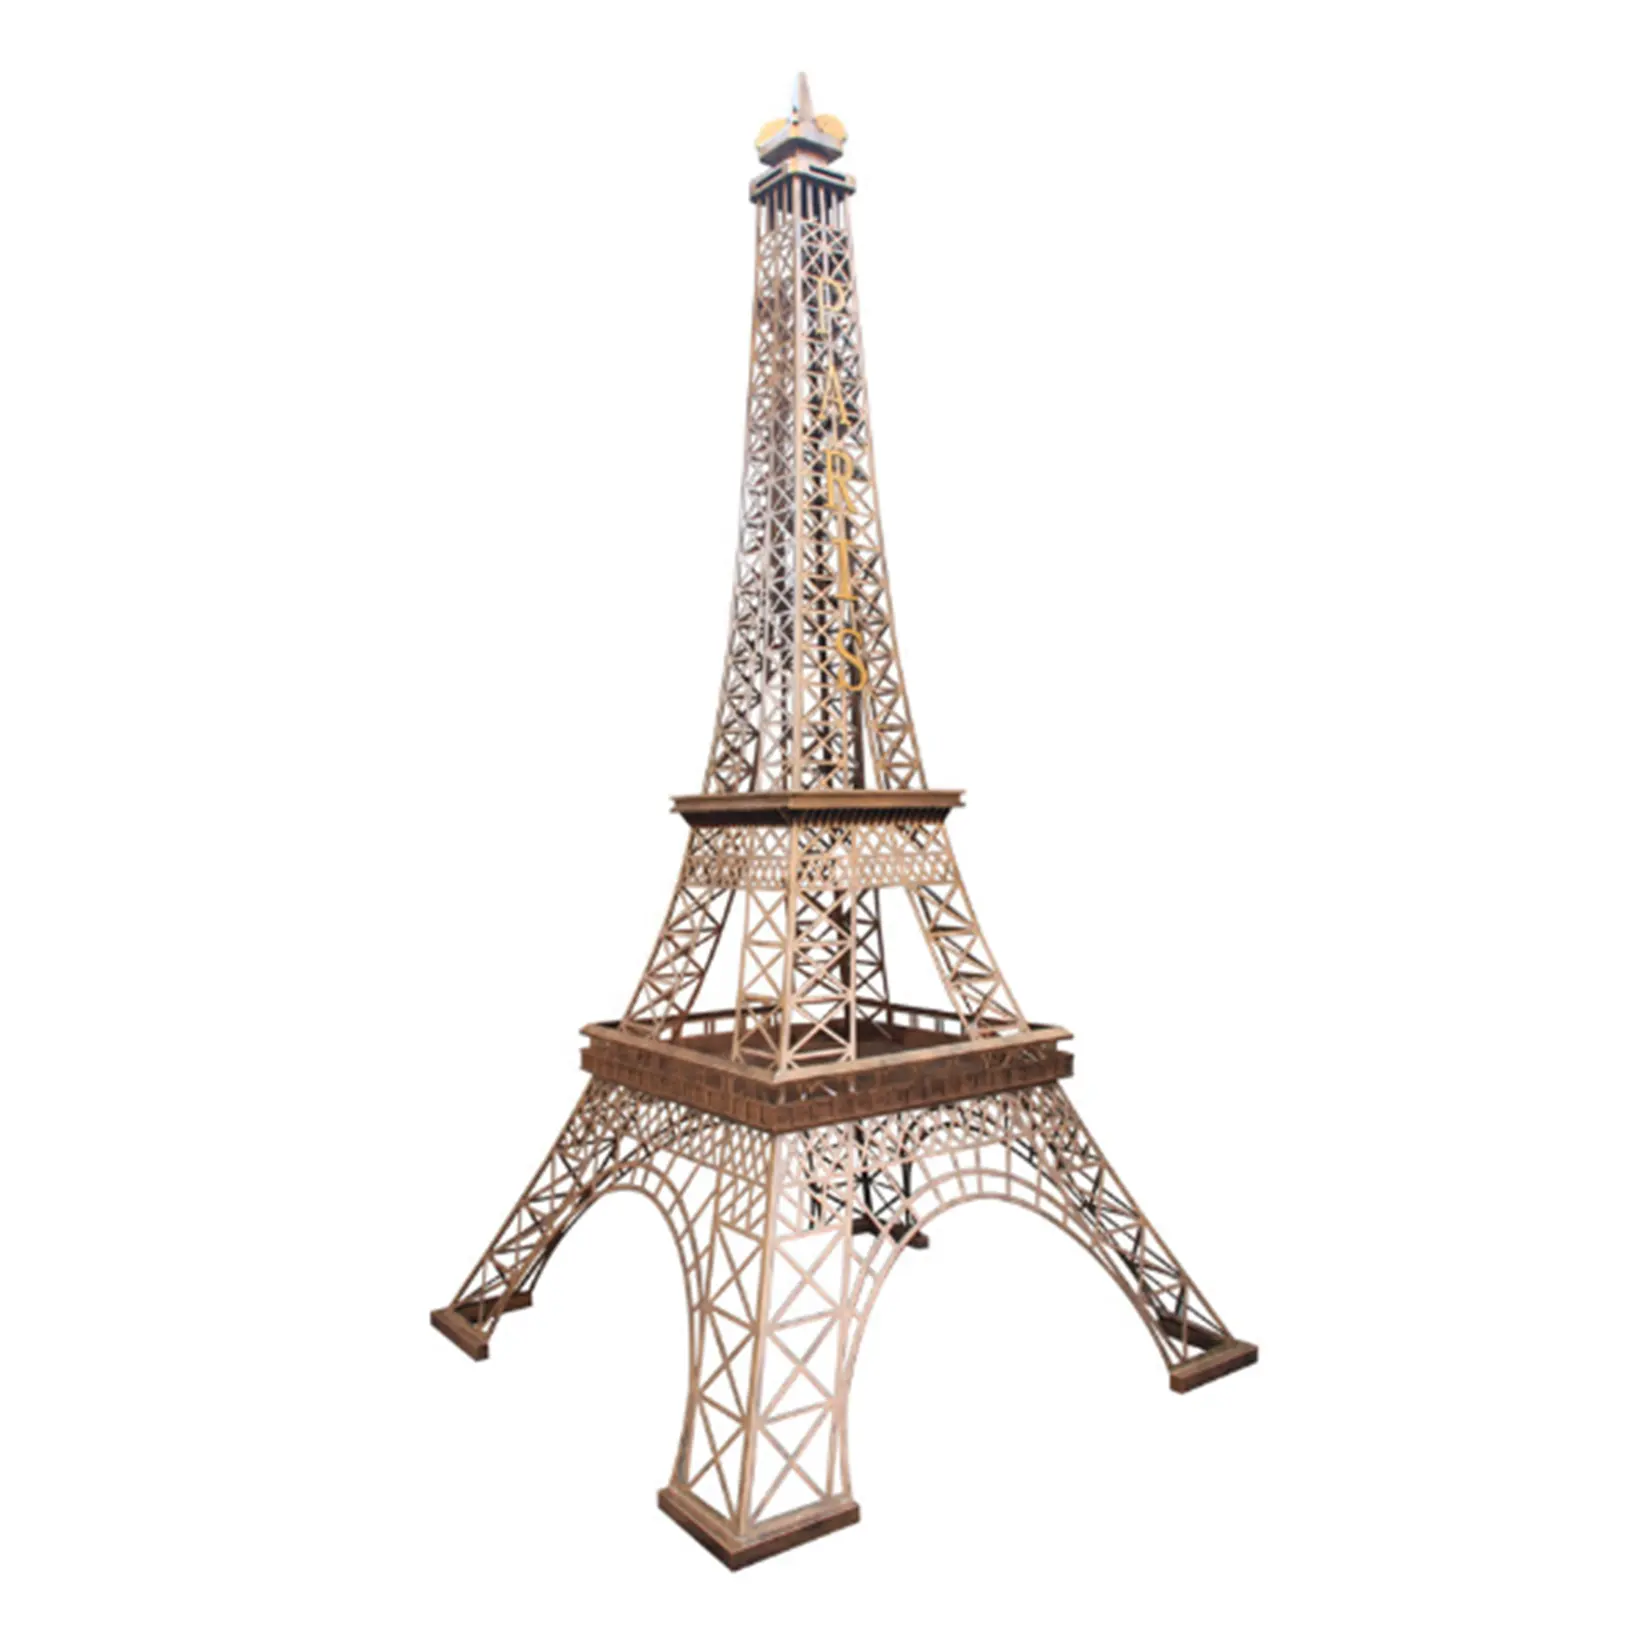 Escultura de Metal de la Torre Eiffel hecha a mano